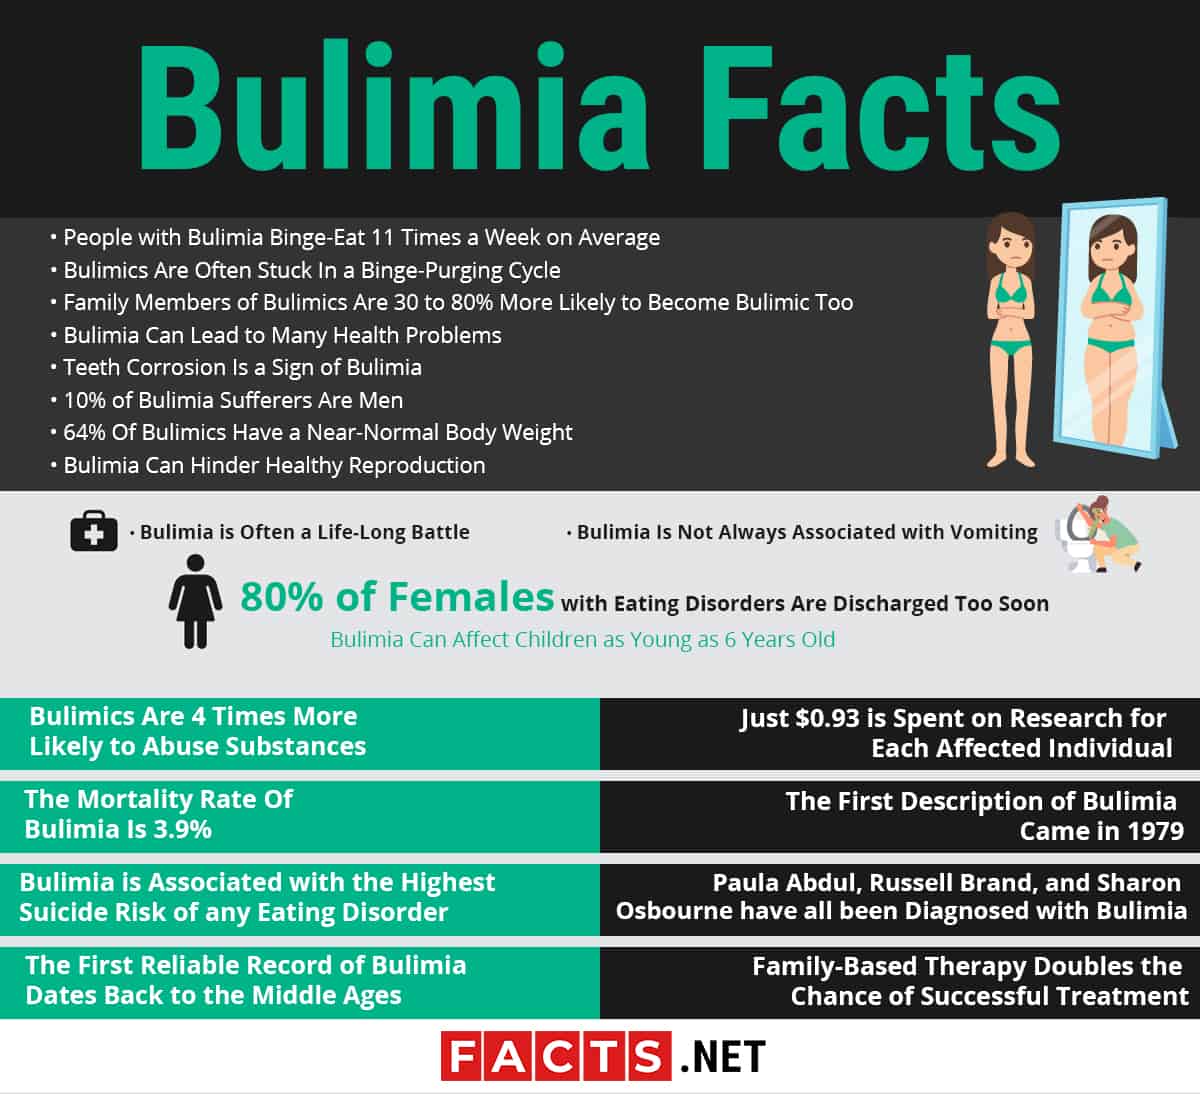  bulimi fakta infografik